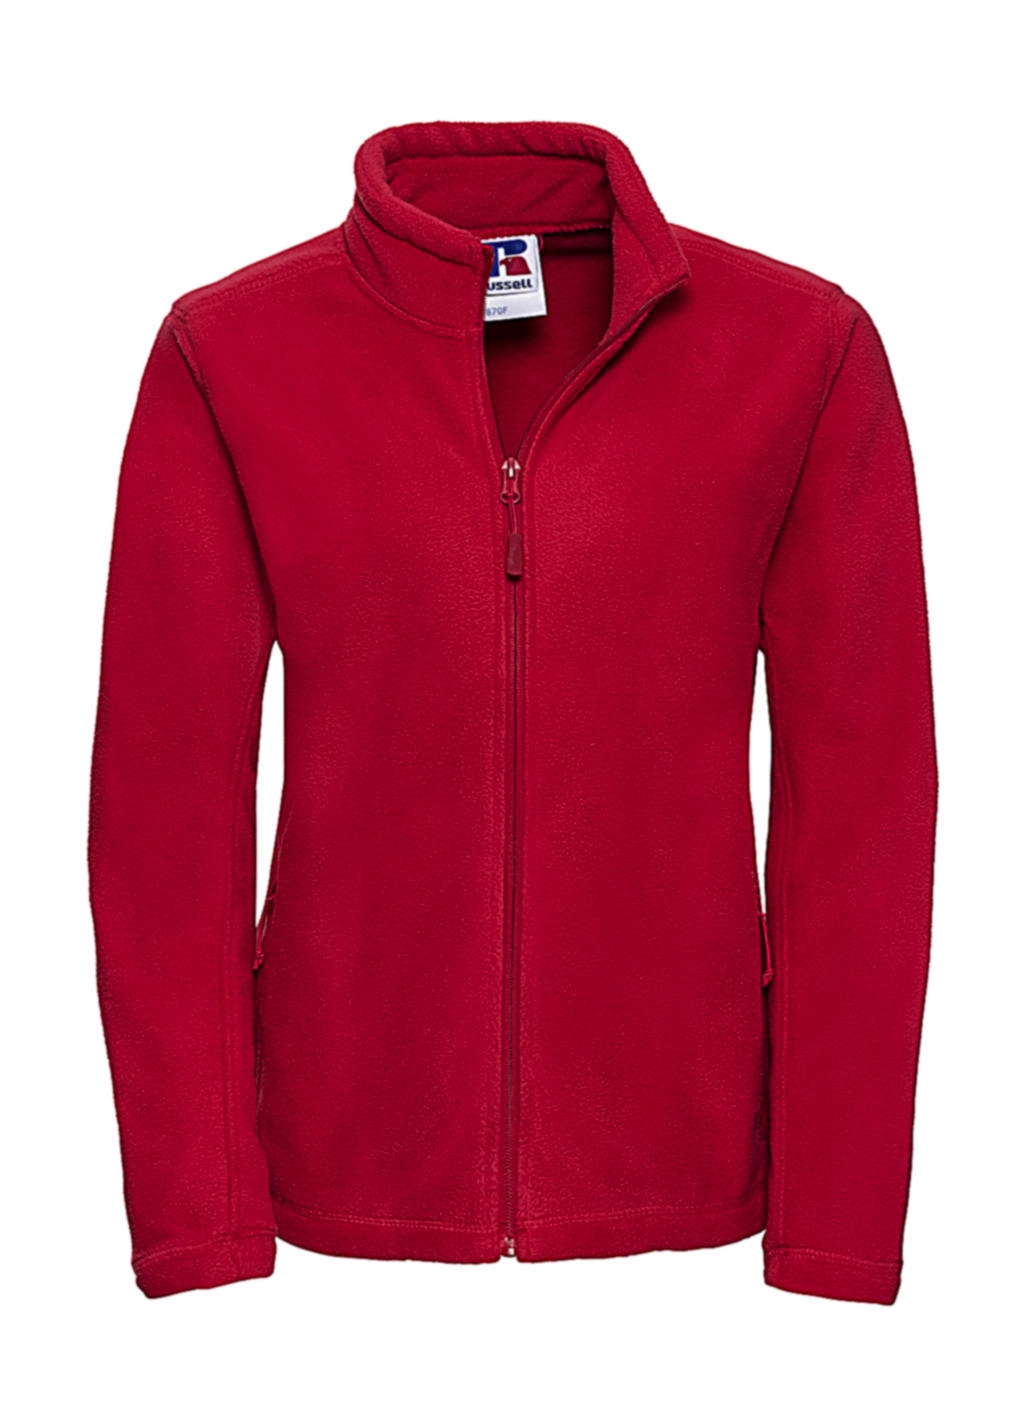 Ladies` Full Zip Outdoor Fleece zum Besticken und Bedrucken in der Farbe Classic Red mit Ihren Logo, Schriftzug oder Motiv.